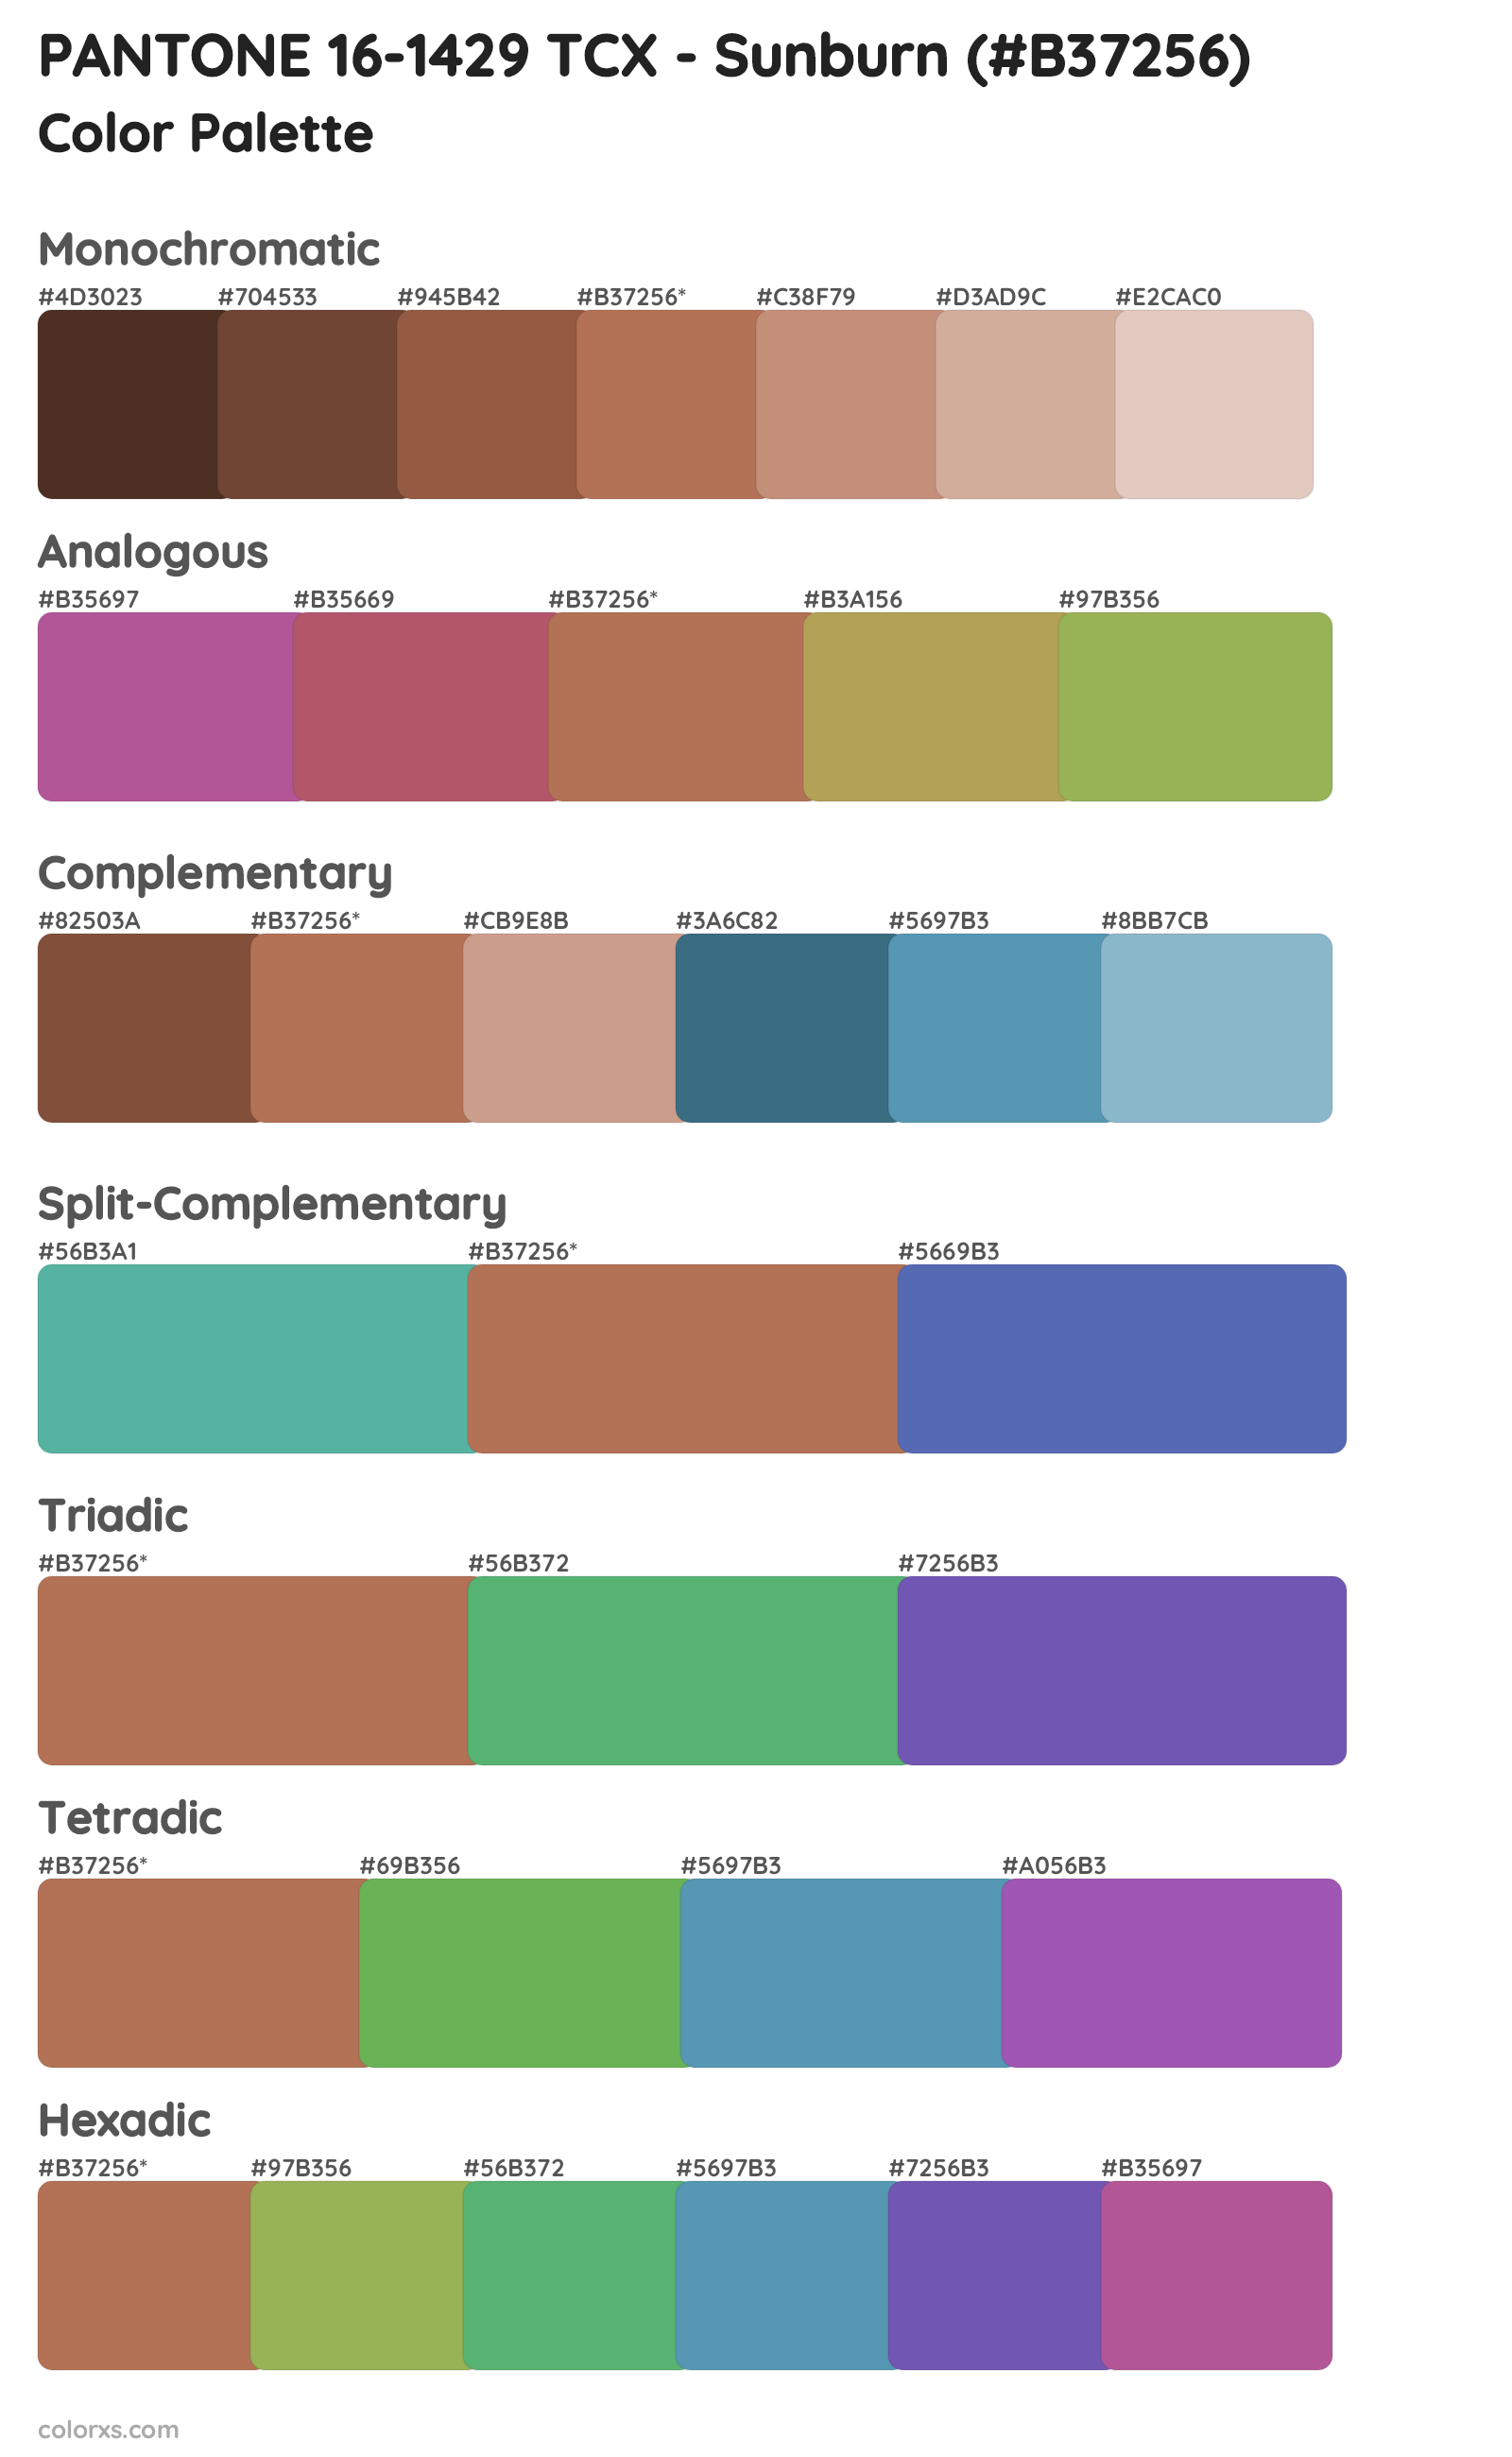 PANTONE 16-1429 TCX - Sunburn Color Scheme Palettes